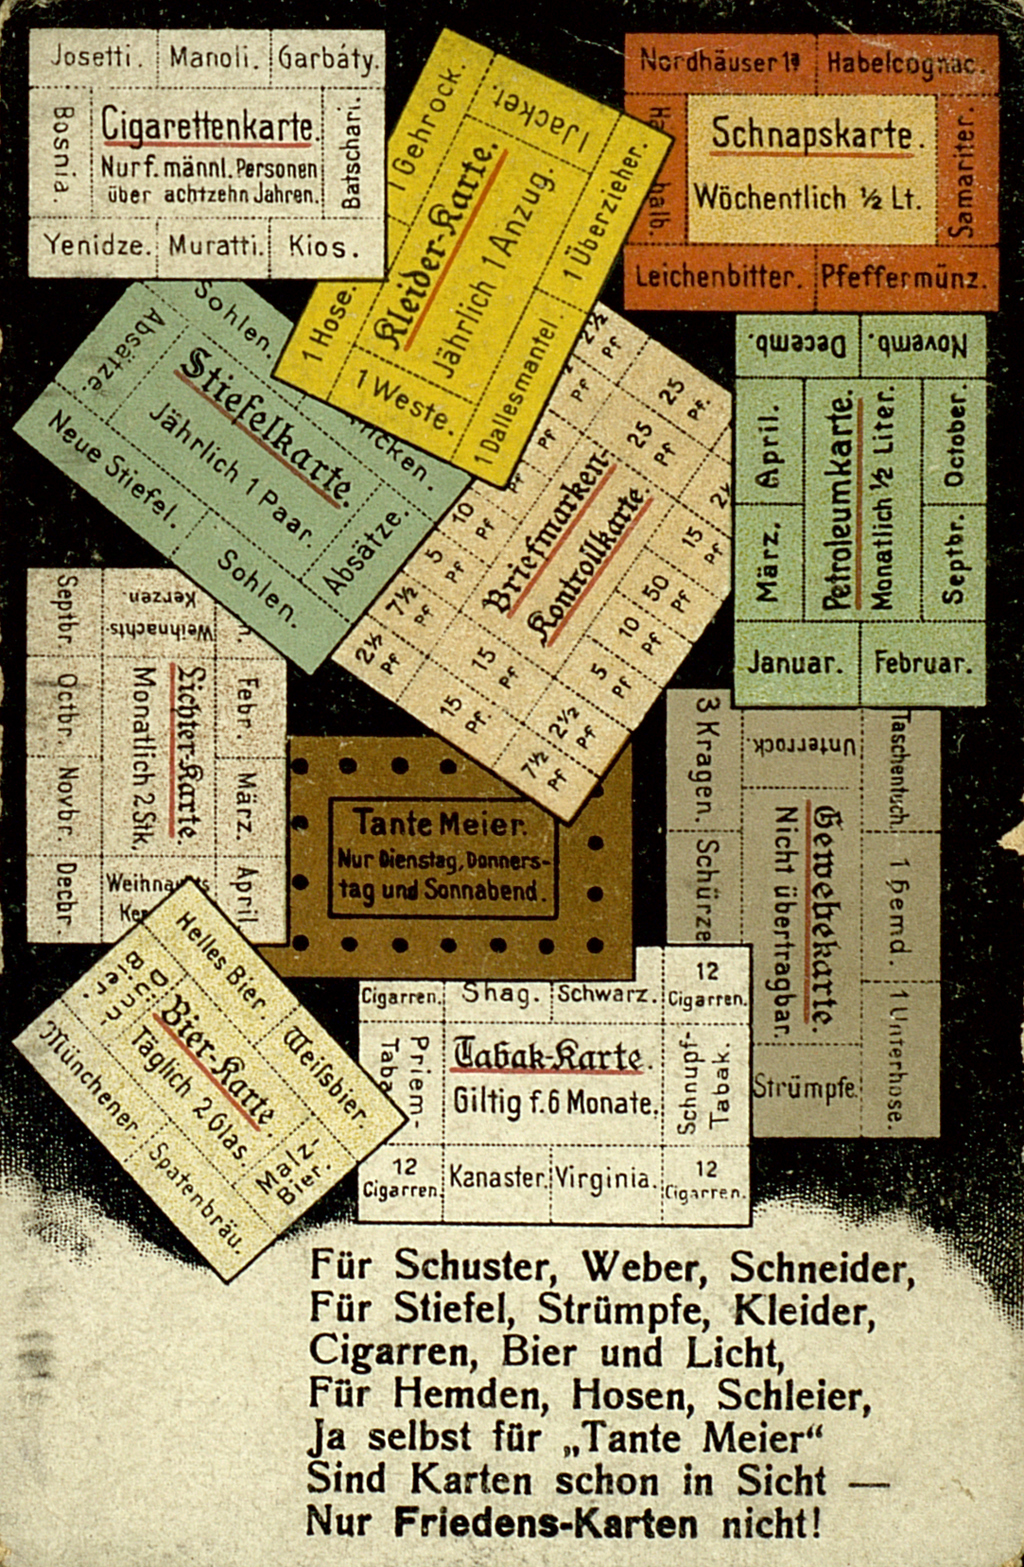 Bunte Propaganda-Postkarte zur Rationierung von Konsumgütern im Deutschen Reich während des Ersten Weltkriegs.